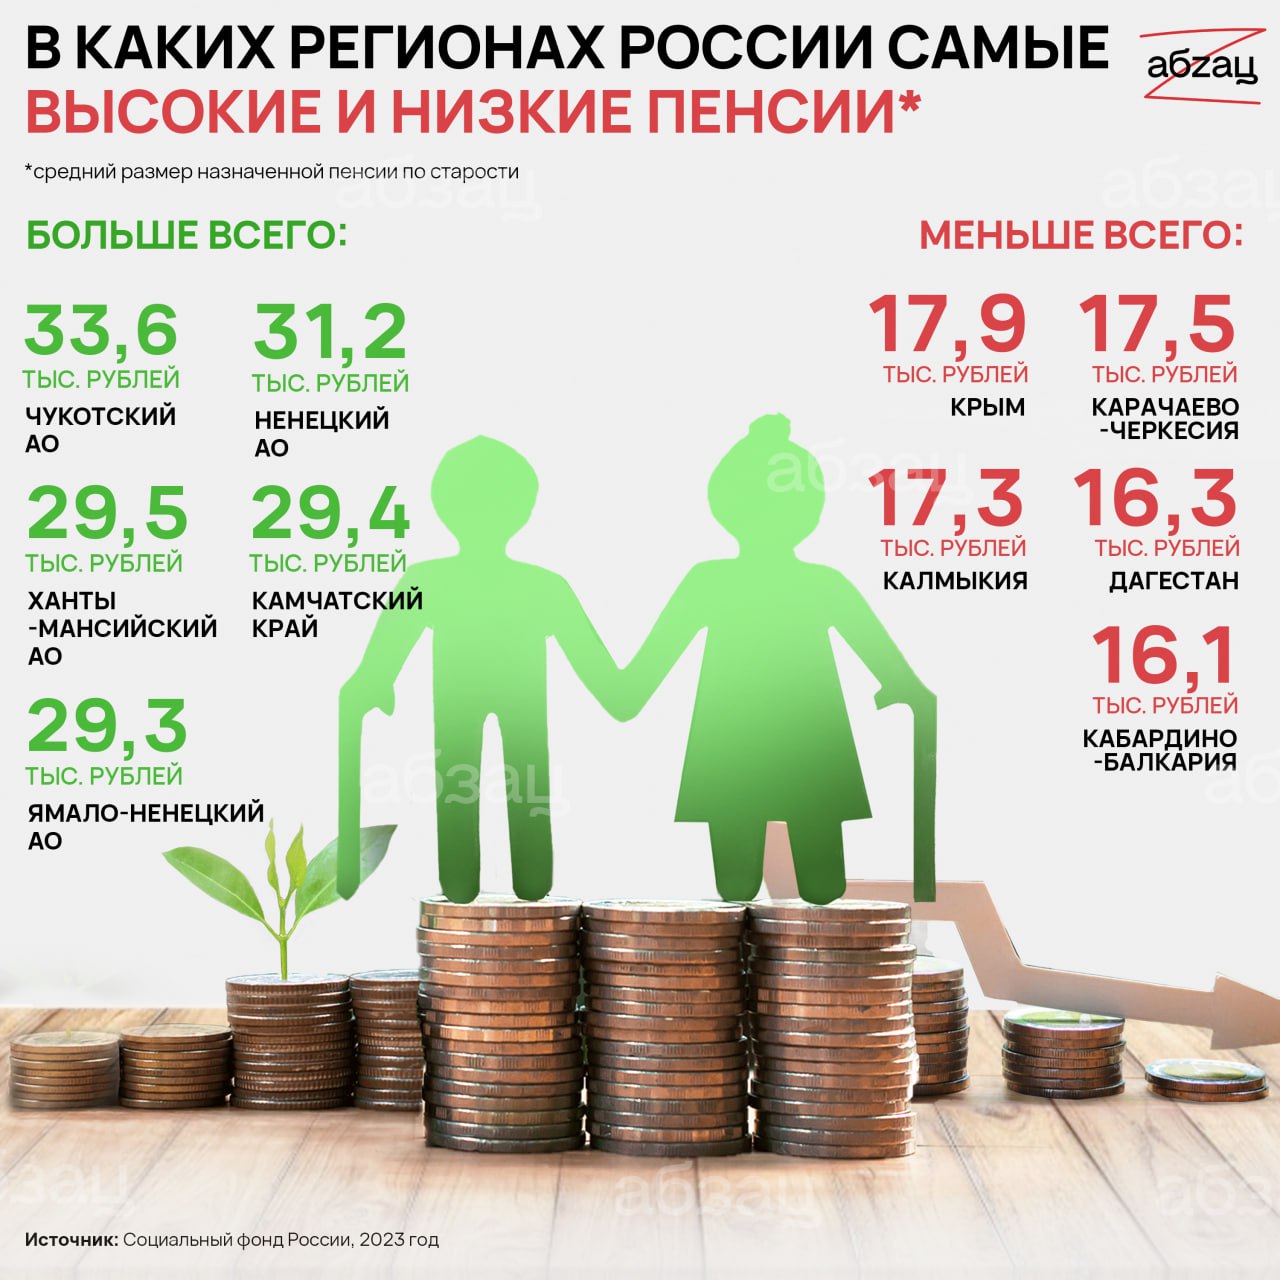 Пенсия 2023 возраст. Самая высокая пенсия в России. Самые высокие пенсии в России по регионам. Сумма социальной пенсии в 2023 году. Средняя пенсия в России в 2023.